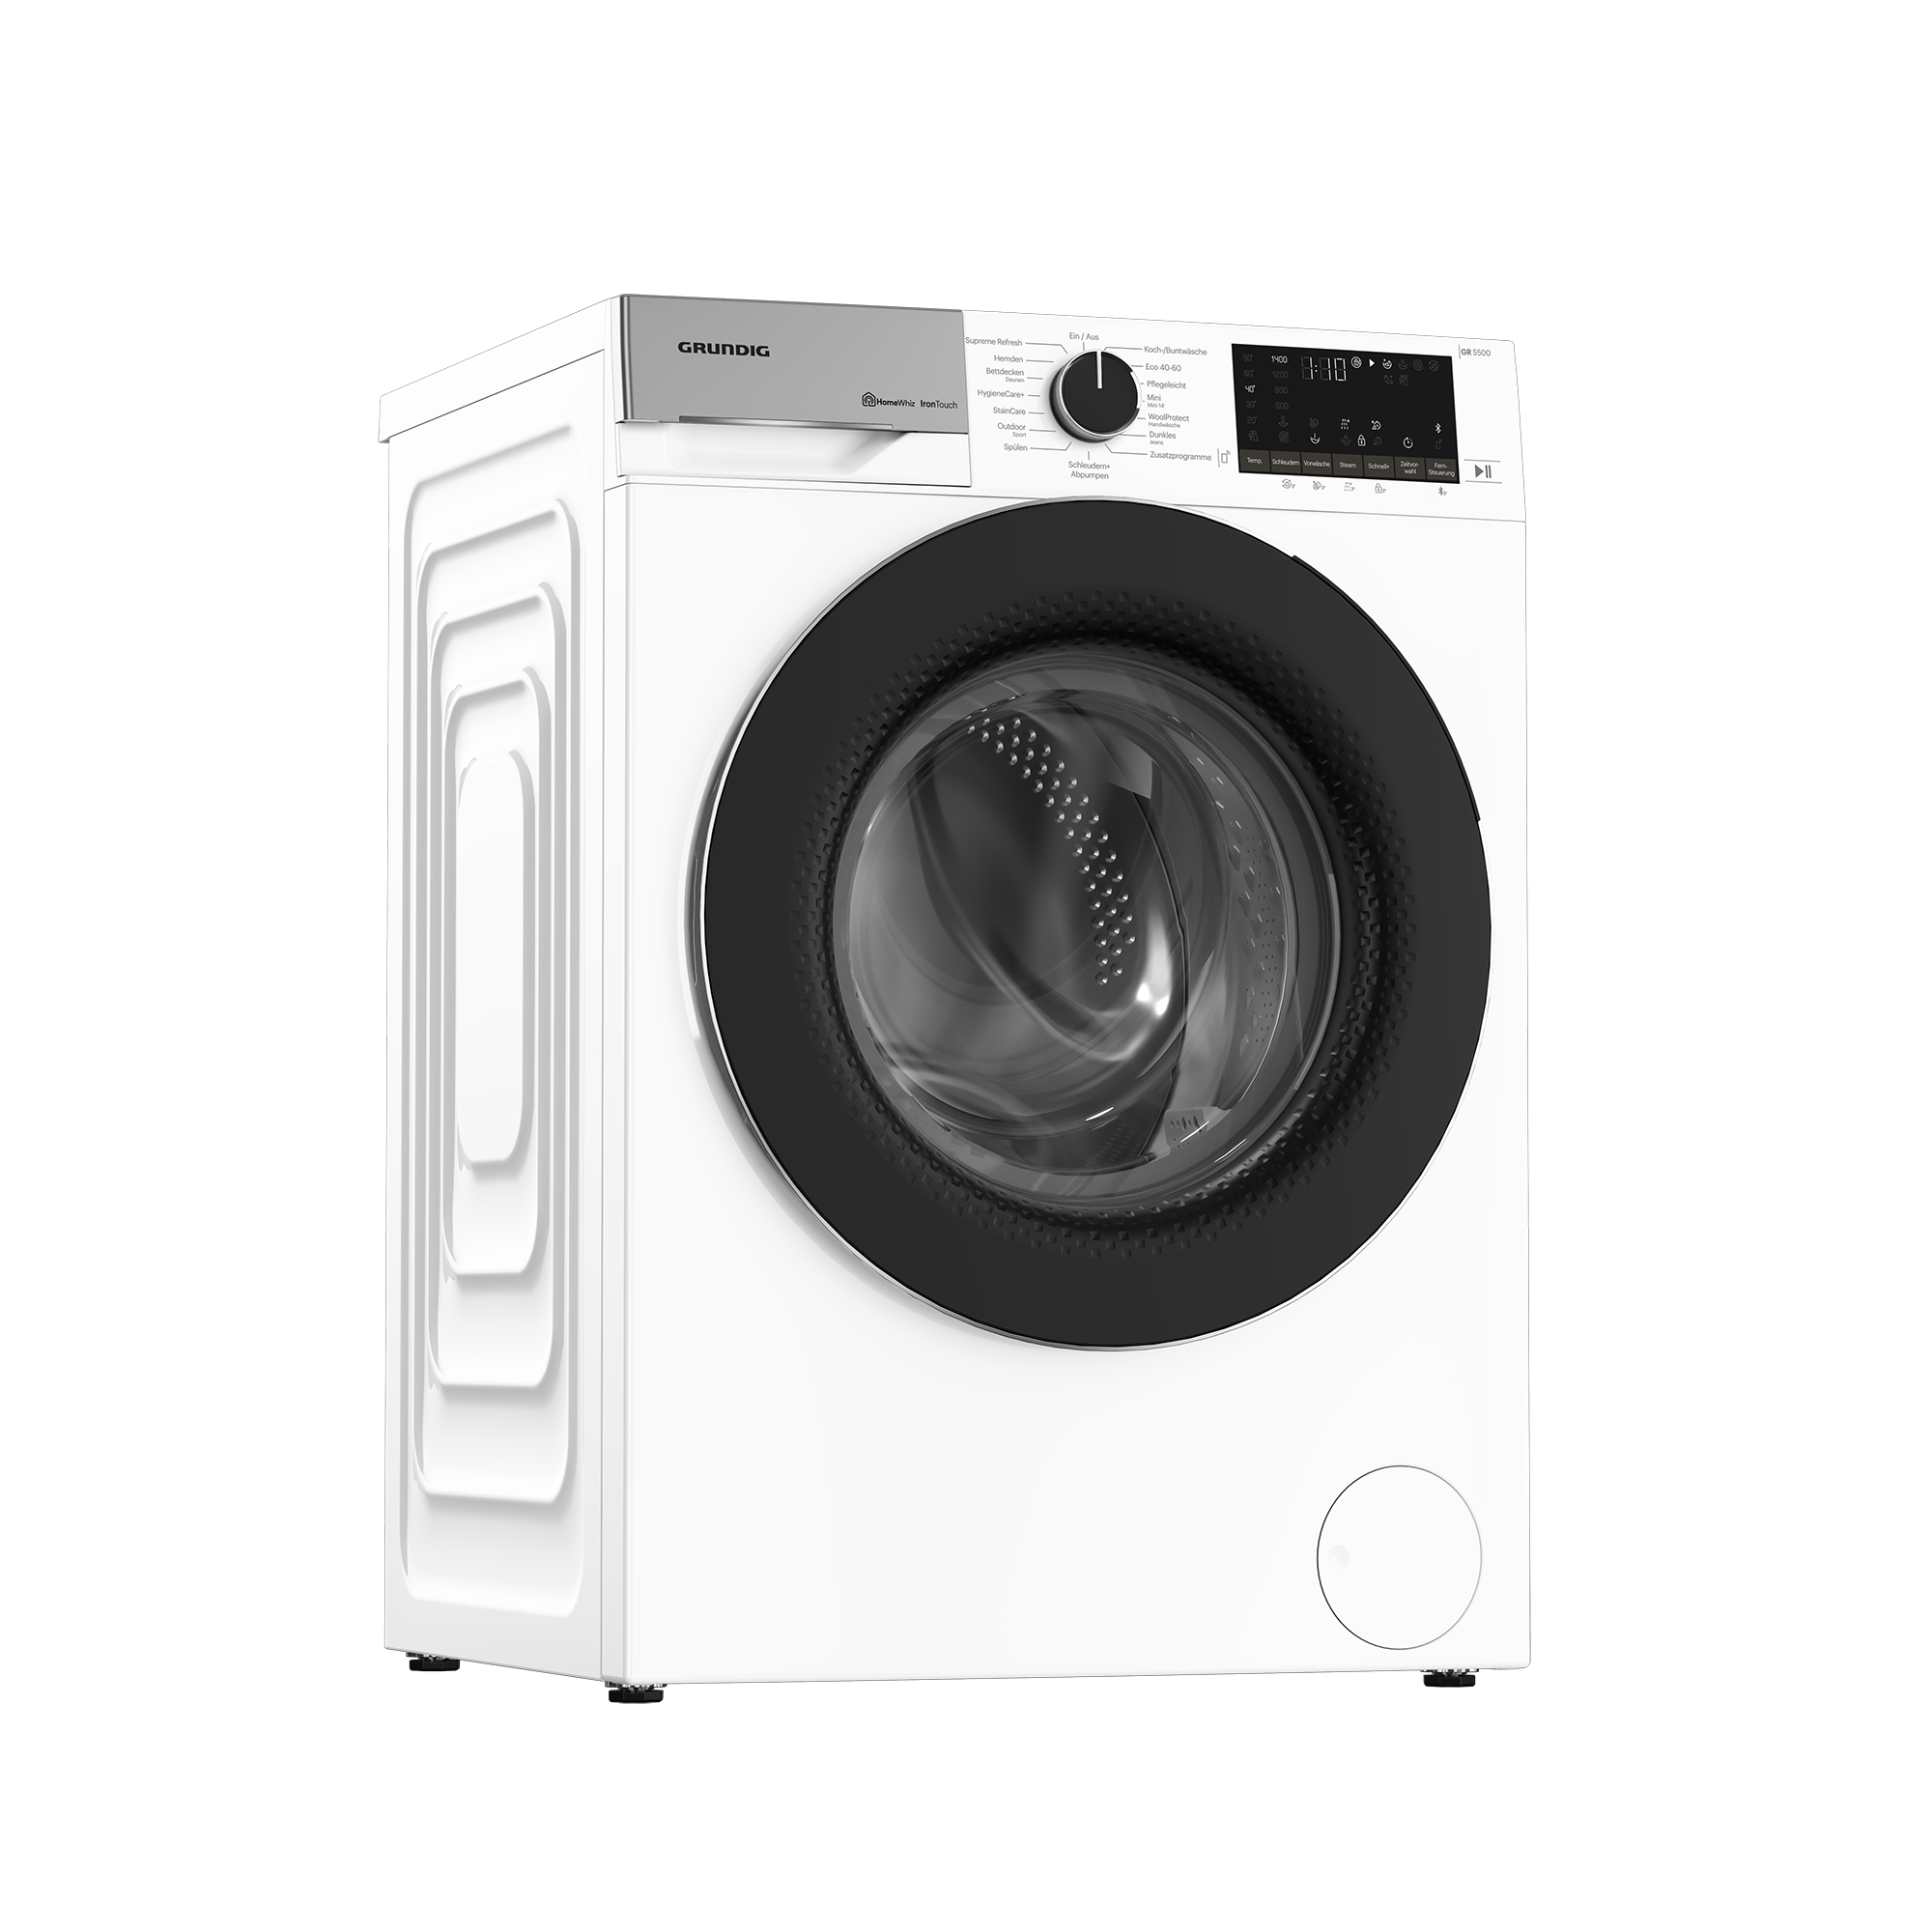 GW5P59415W2 - Waschmaschine - | Waschen Grundig kaufen & Trocknen | jetzt